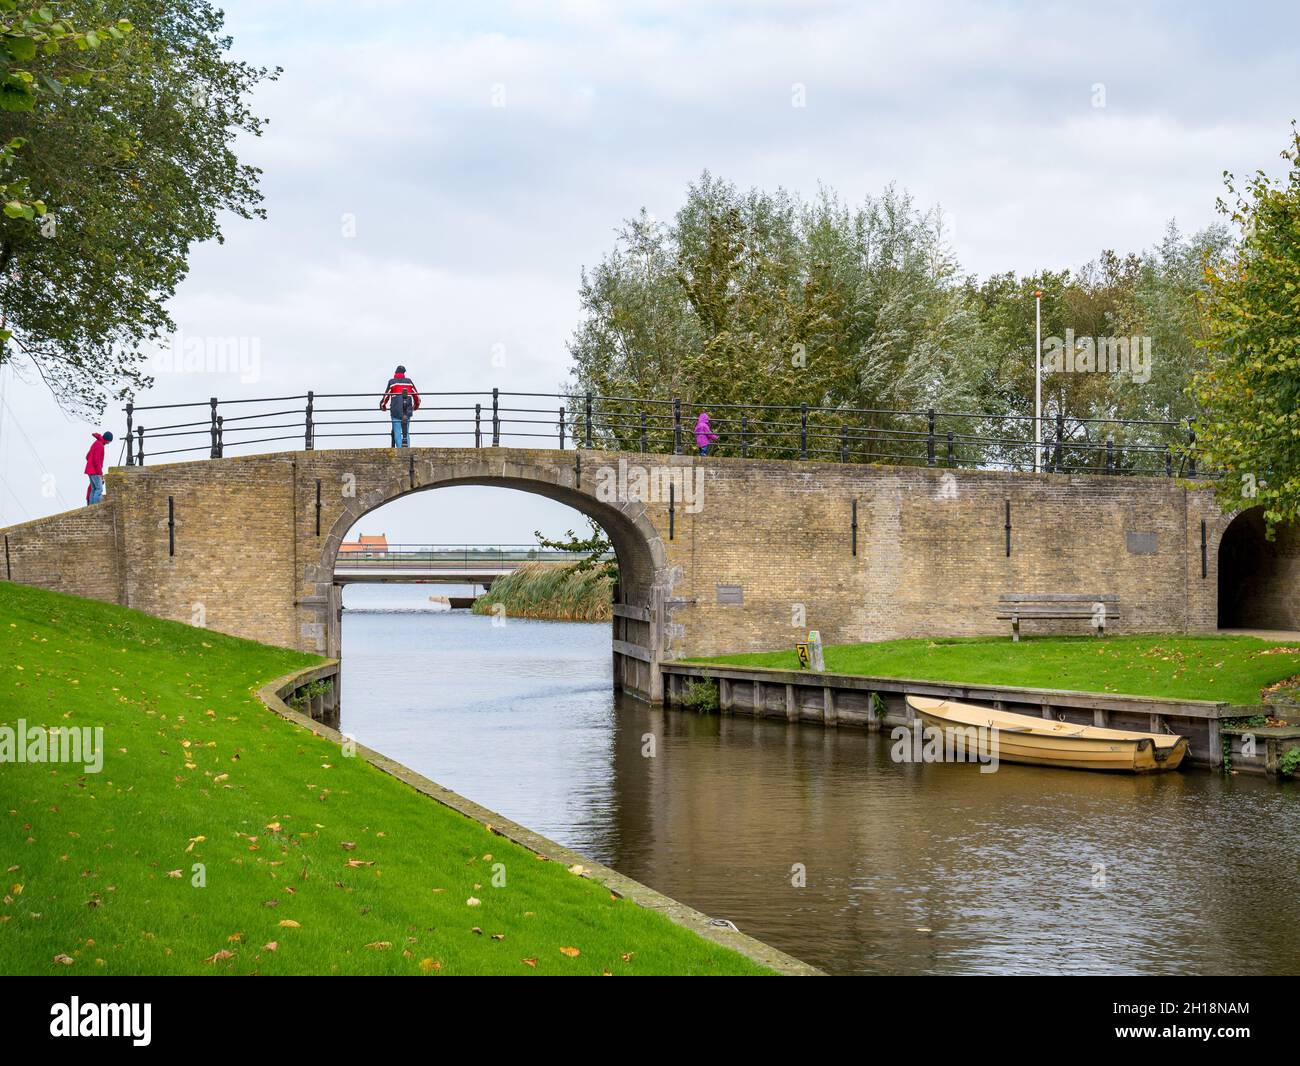 People walking on bridge of Woudsender water gate in city of Sloten, Sleat, Friesland, Netherlands Stock Photo